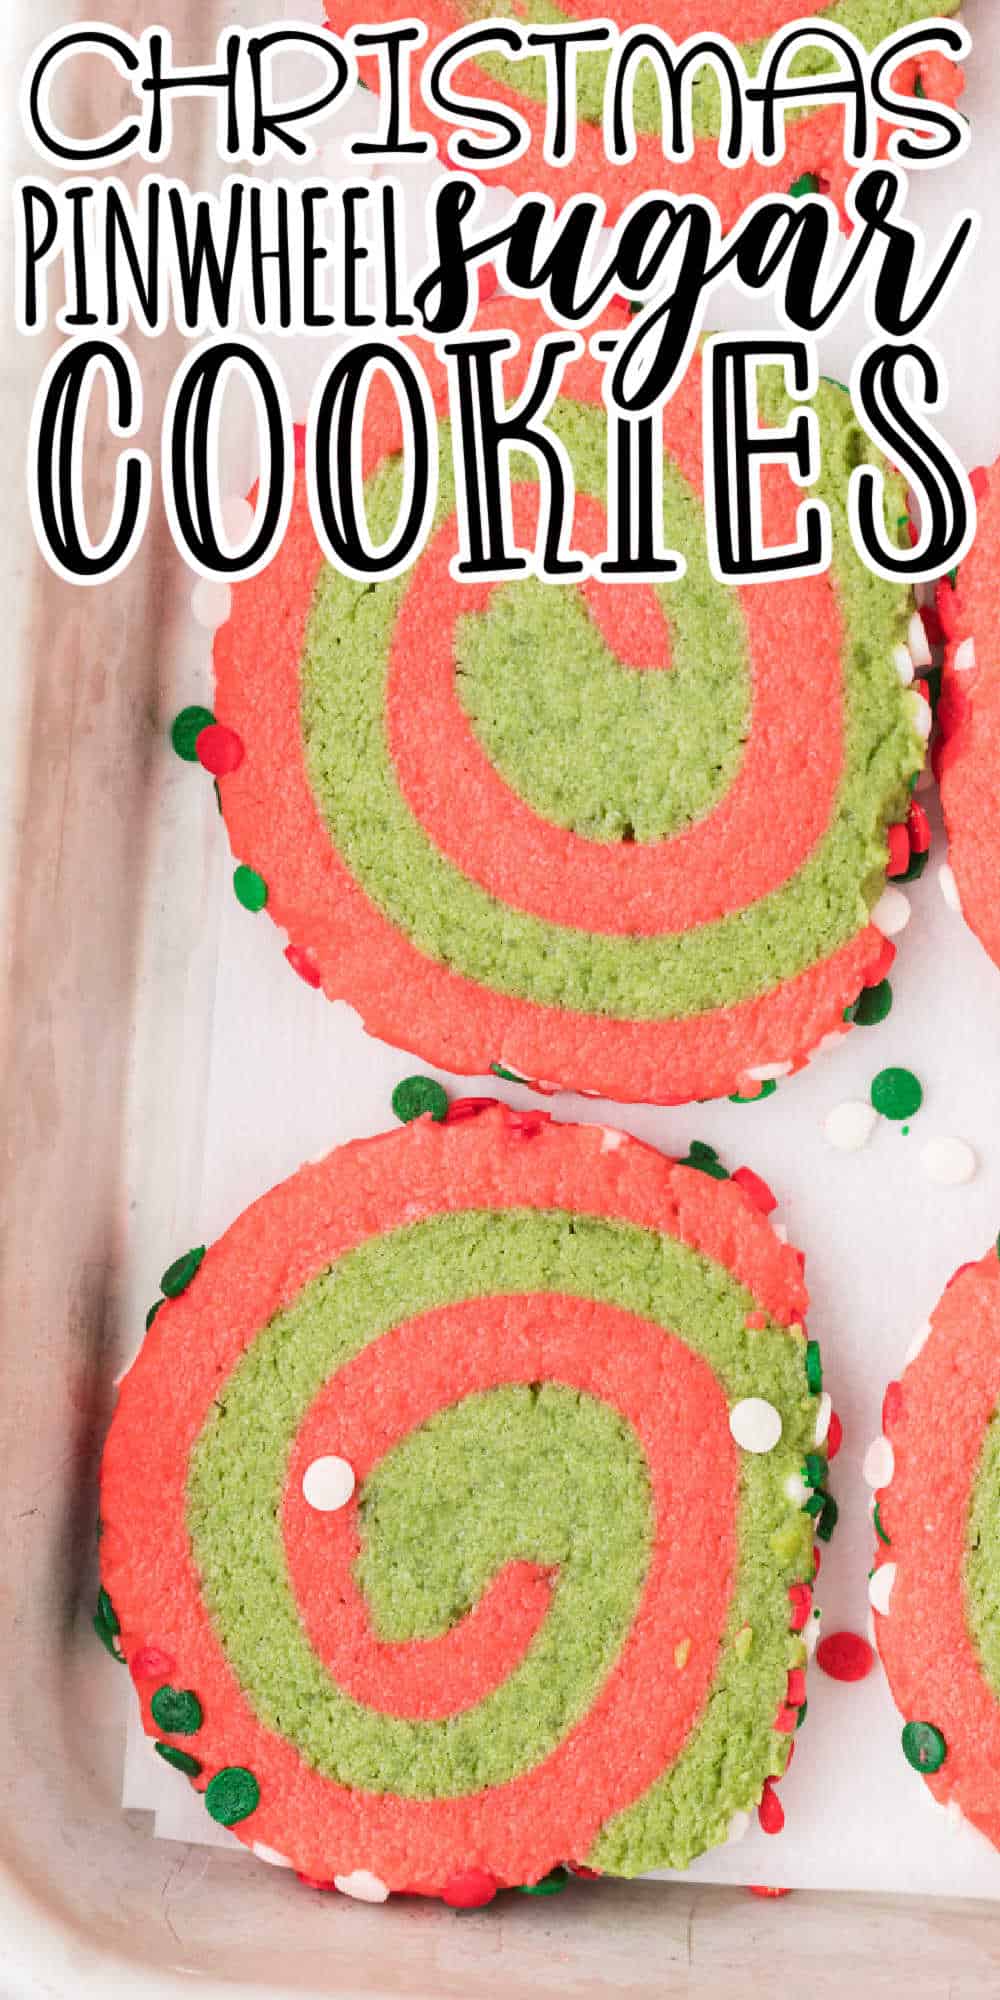 Whoville Cookies (Christmas Pinwheel Cookies) • MidgetMomma